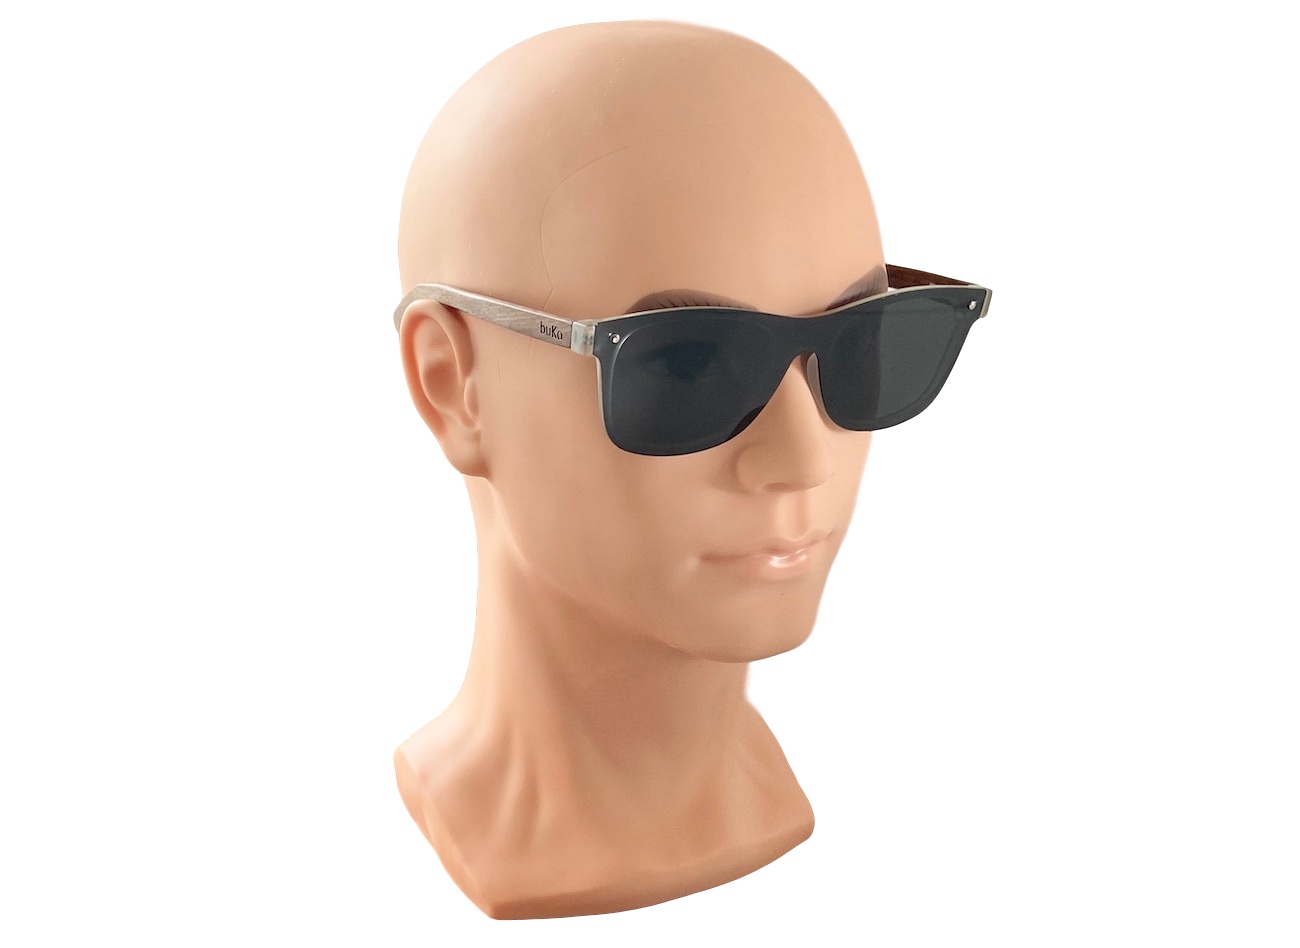 Stark wooden sunglasses on male model